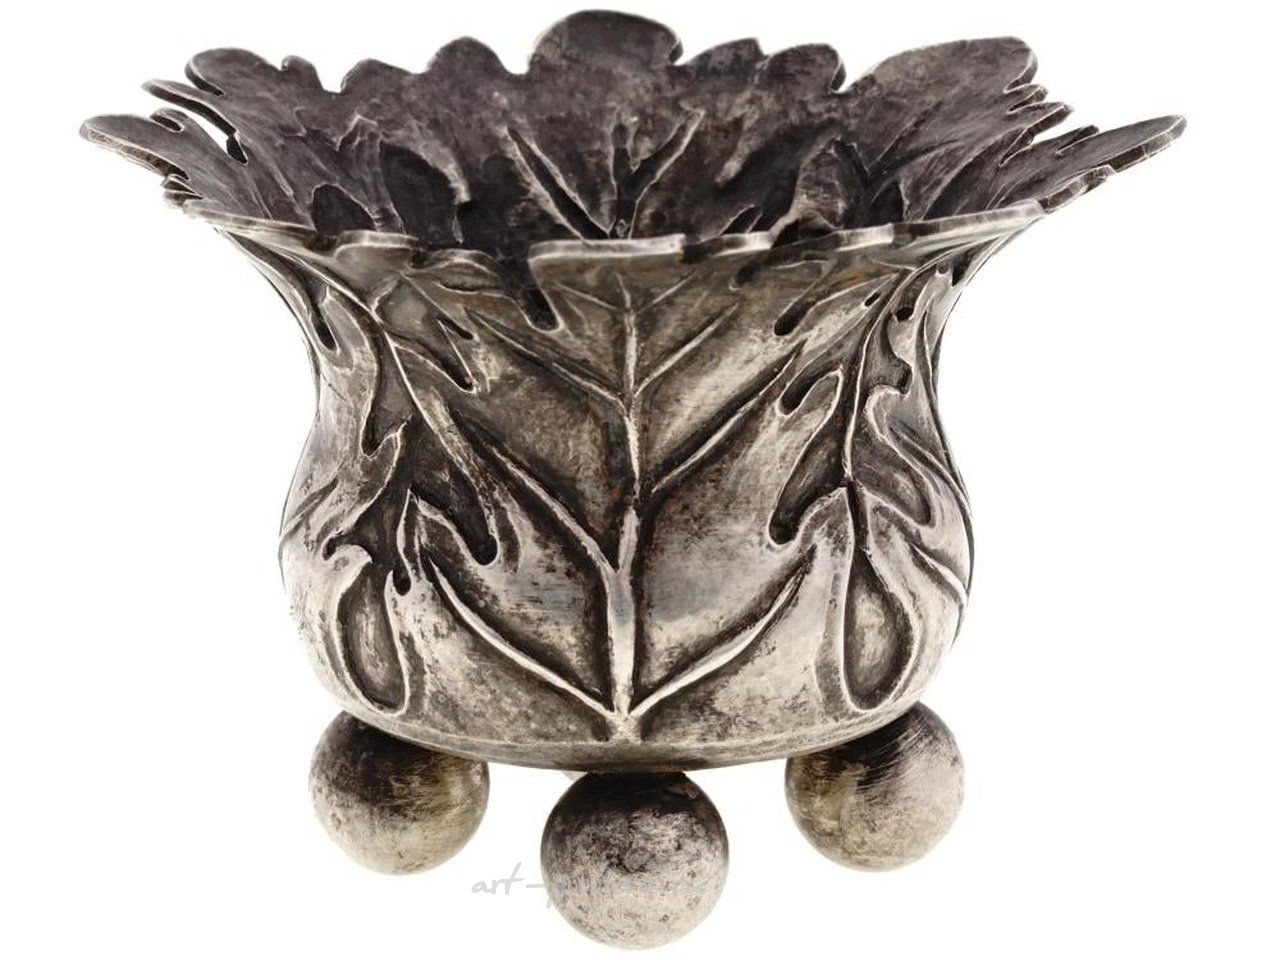 Русское серебро , Подсвечник из серебра с рельефным дизайном листьев дуба